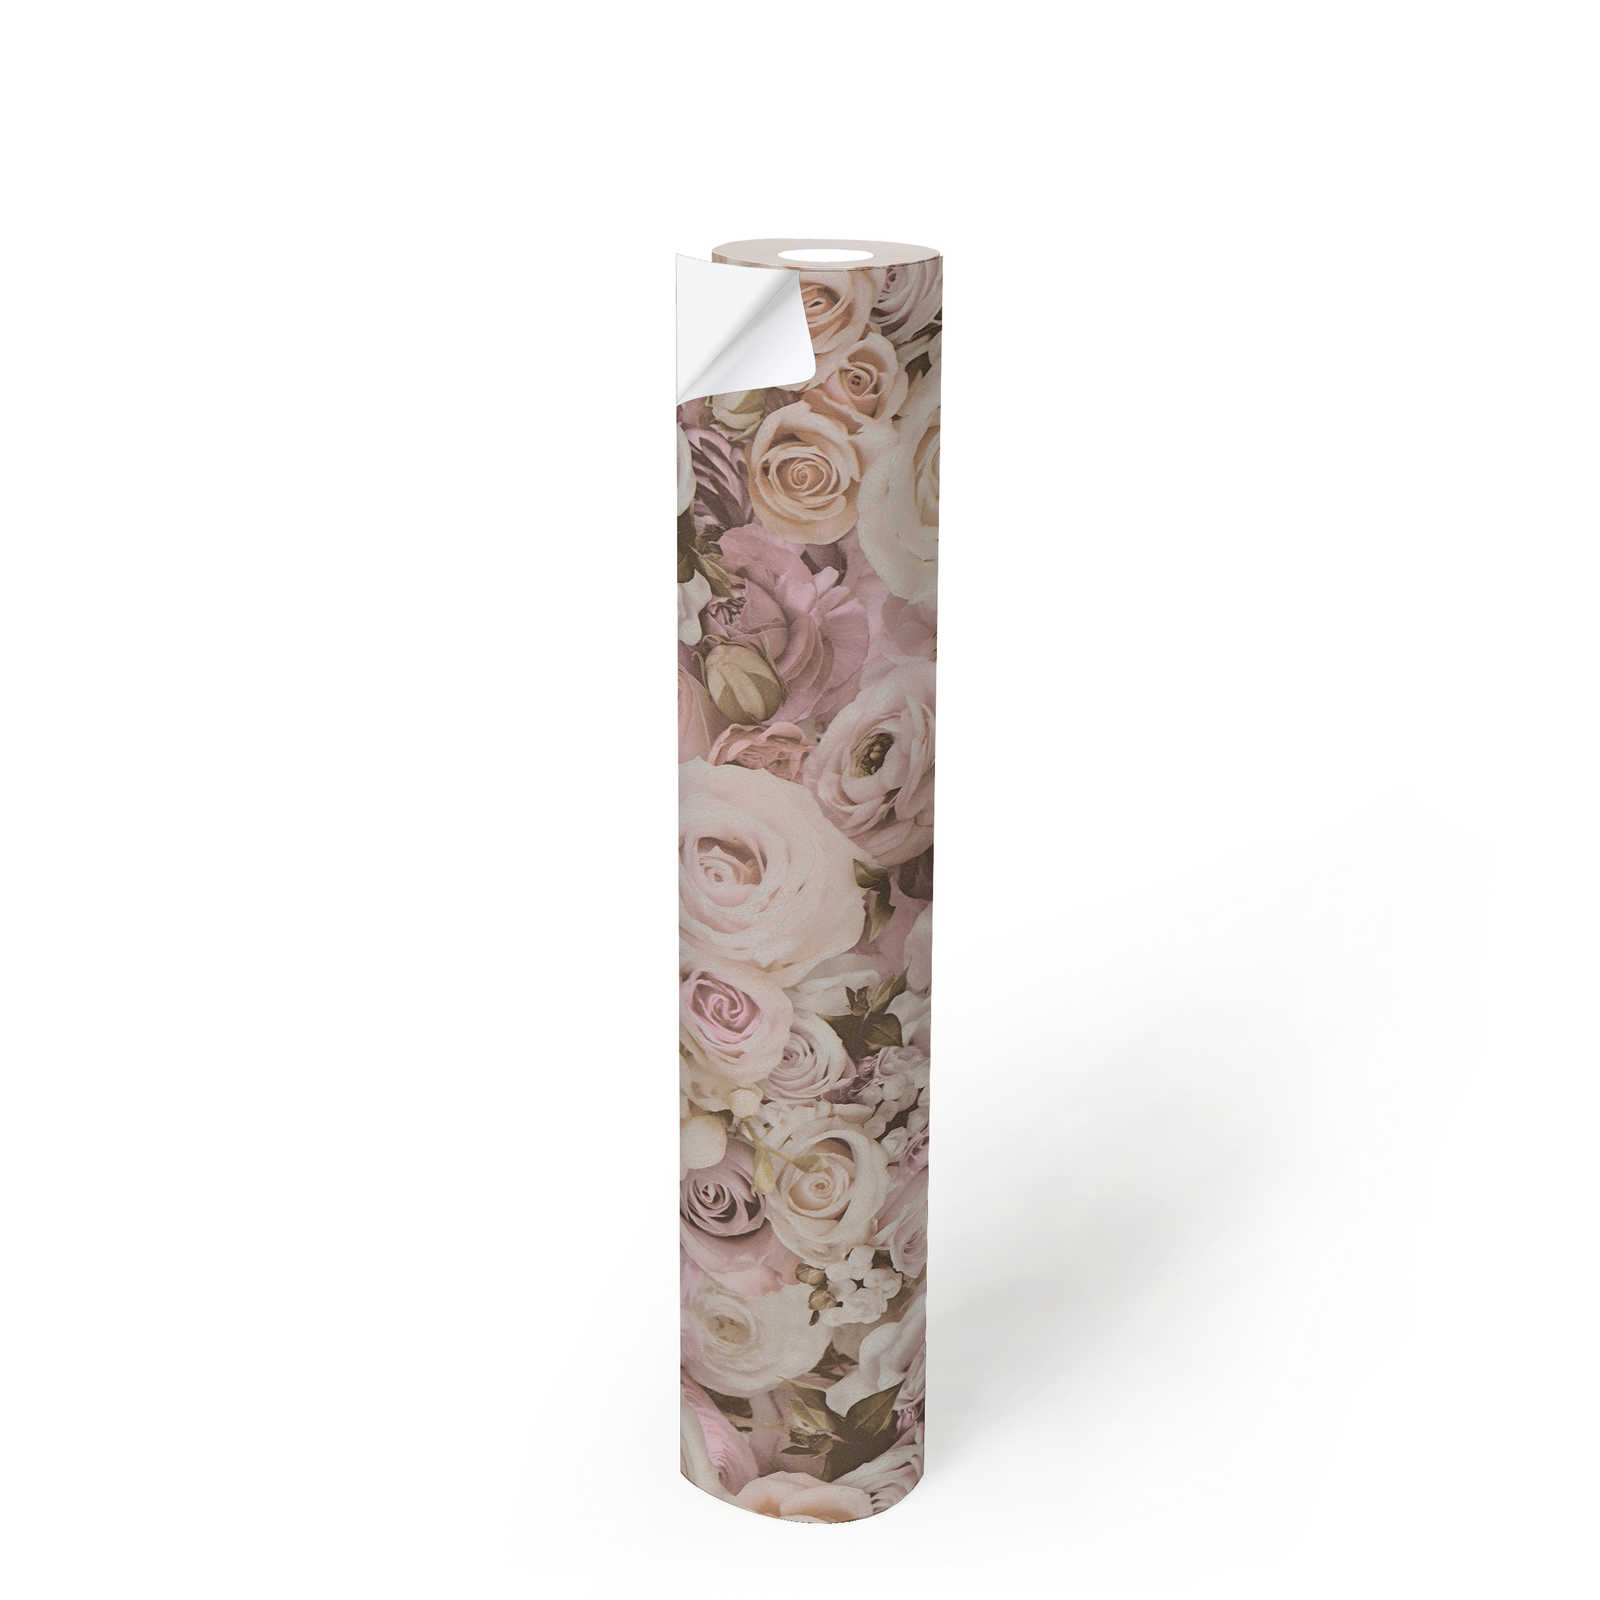             Zelfklevend behang | bloemenpatroon met rozen - roze, crème
        